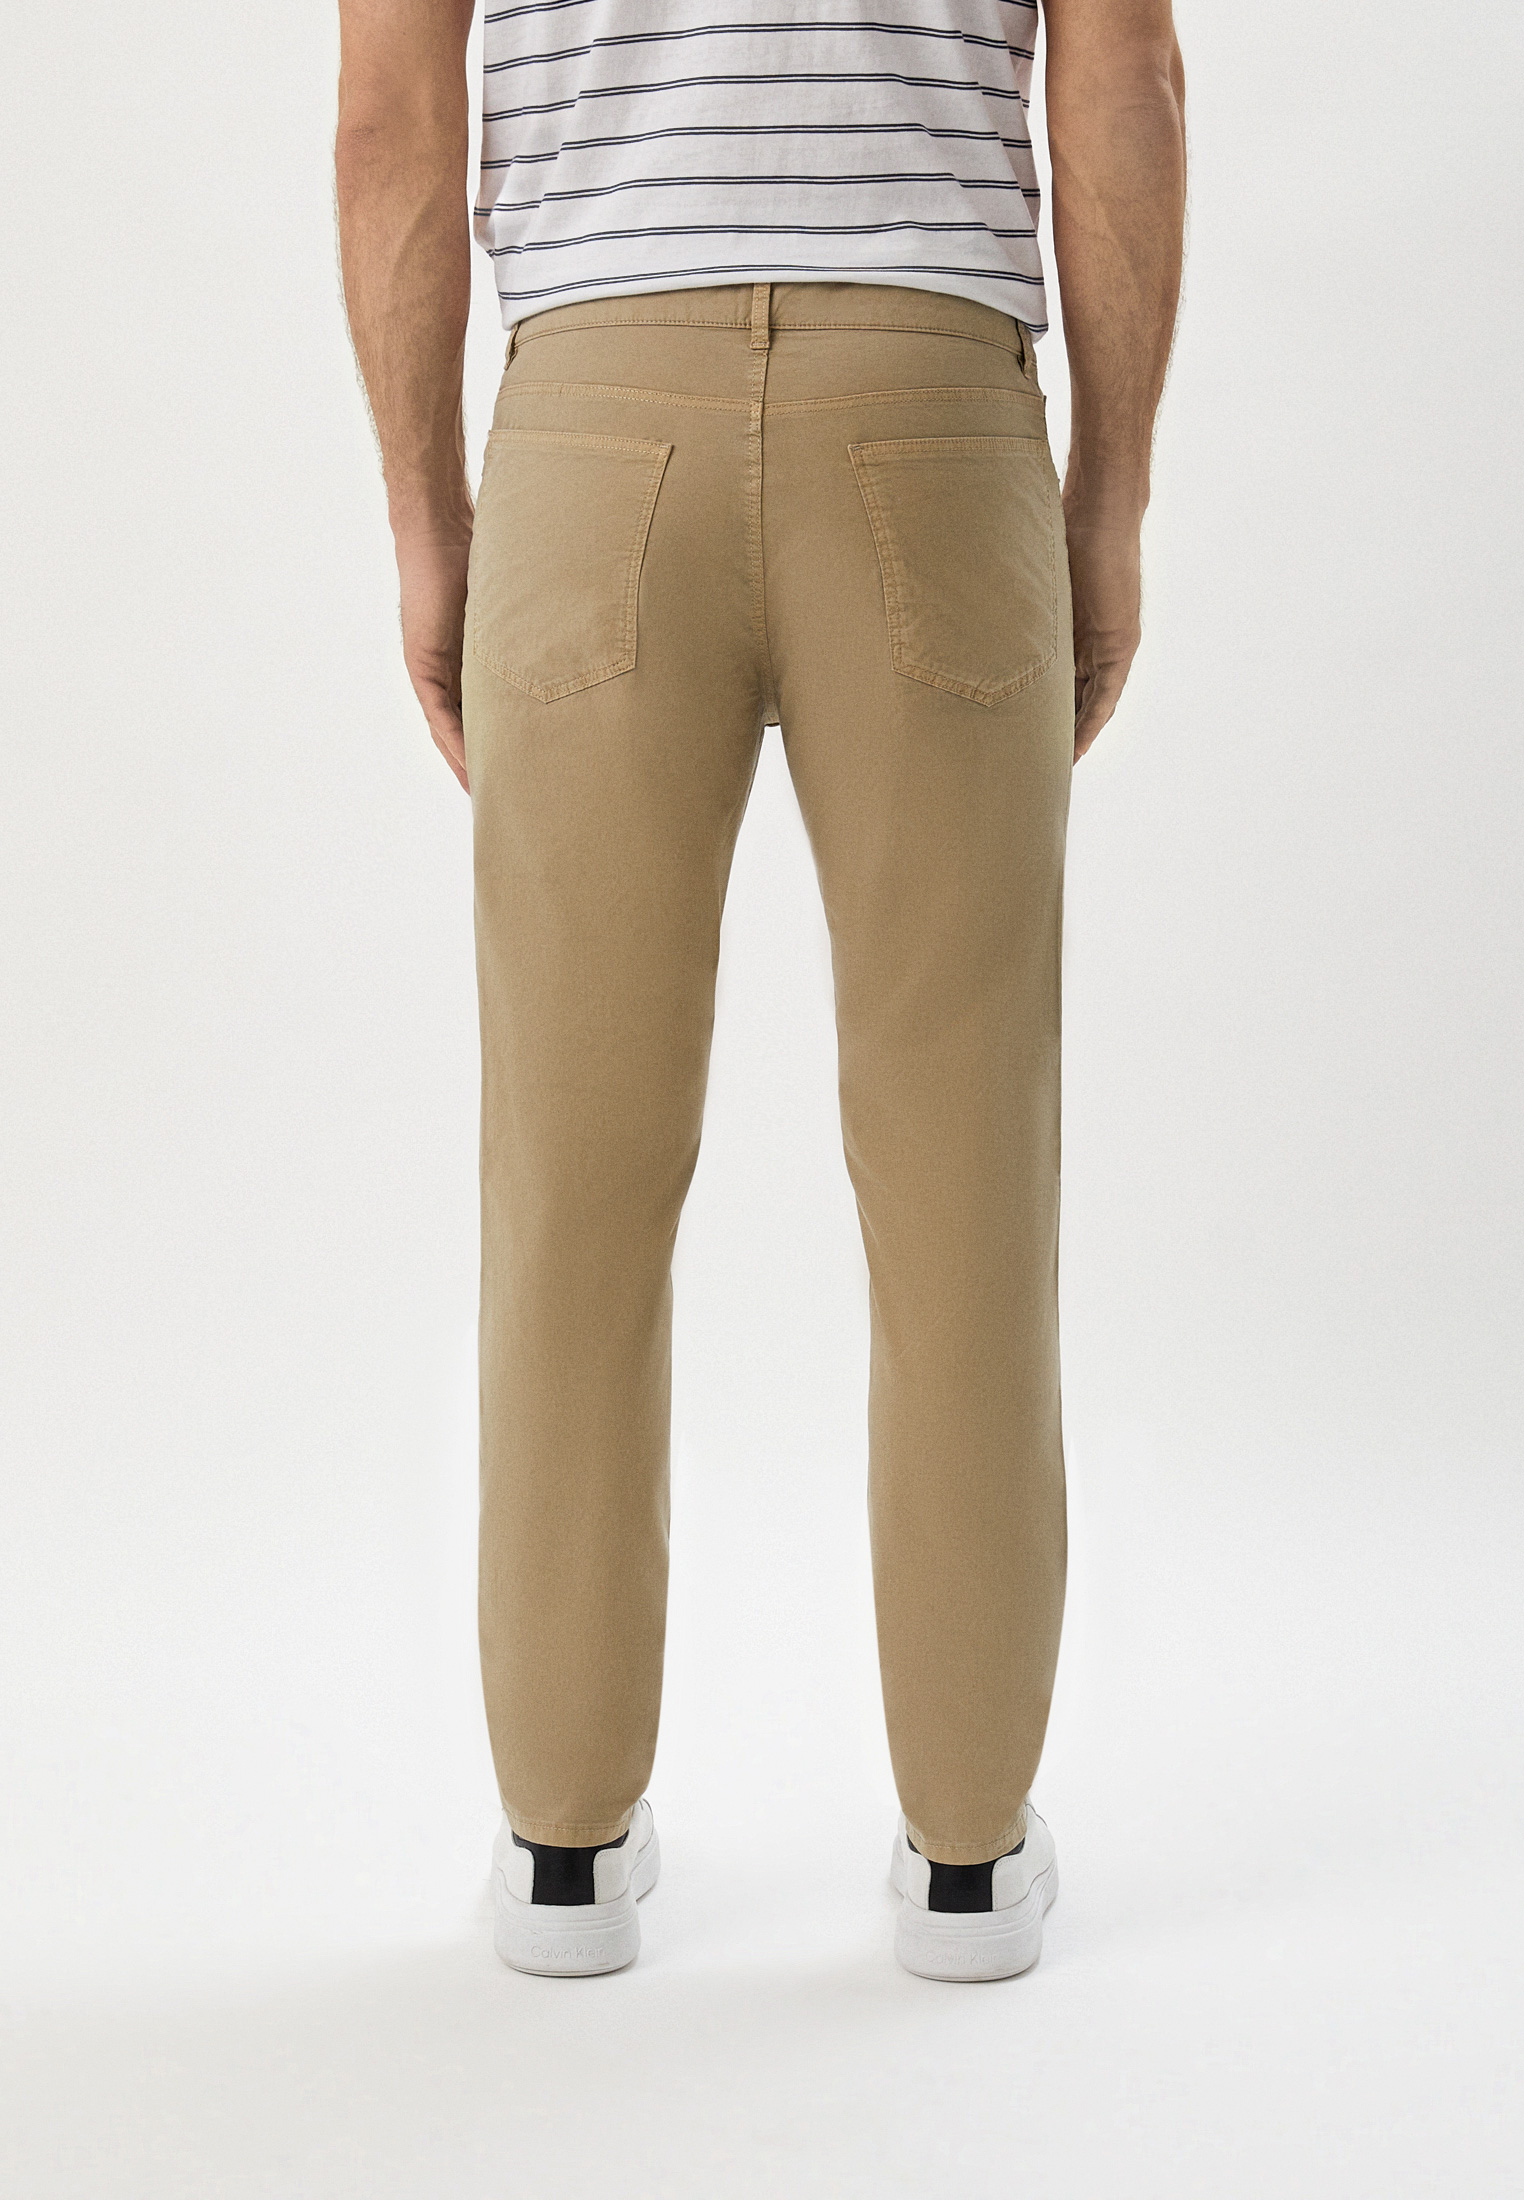 Мужские повседневные брюки Trussardi (Труссарди) 52J00007-1T005772: изображение 3